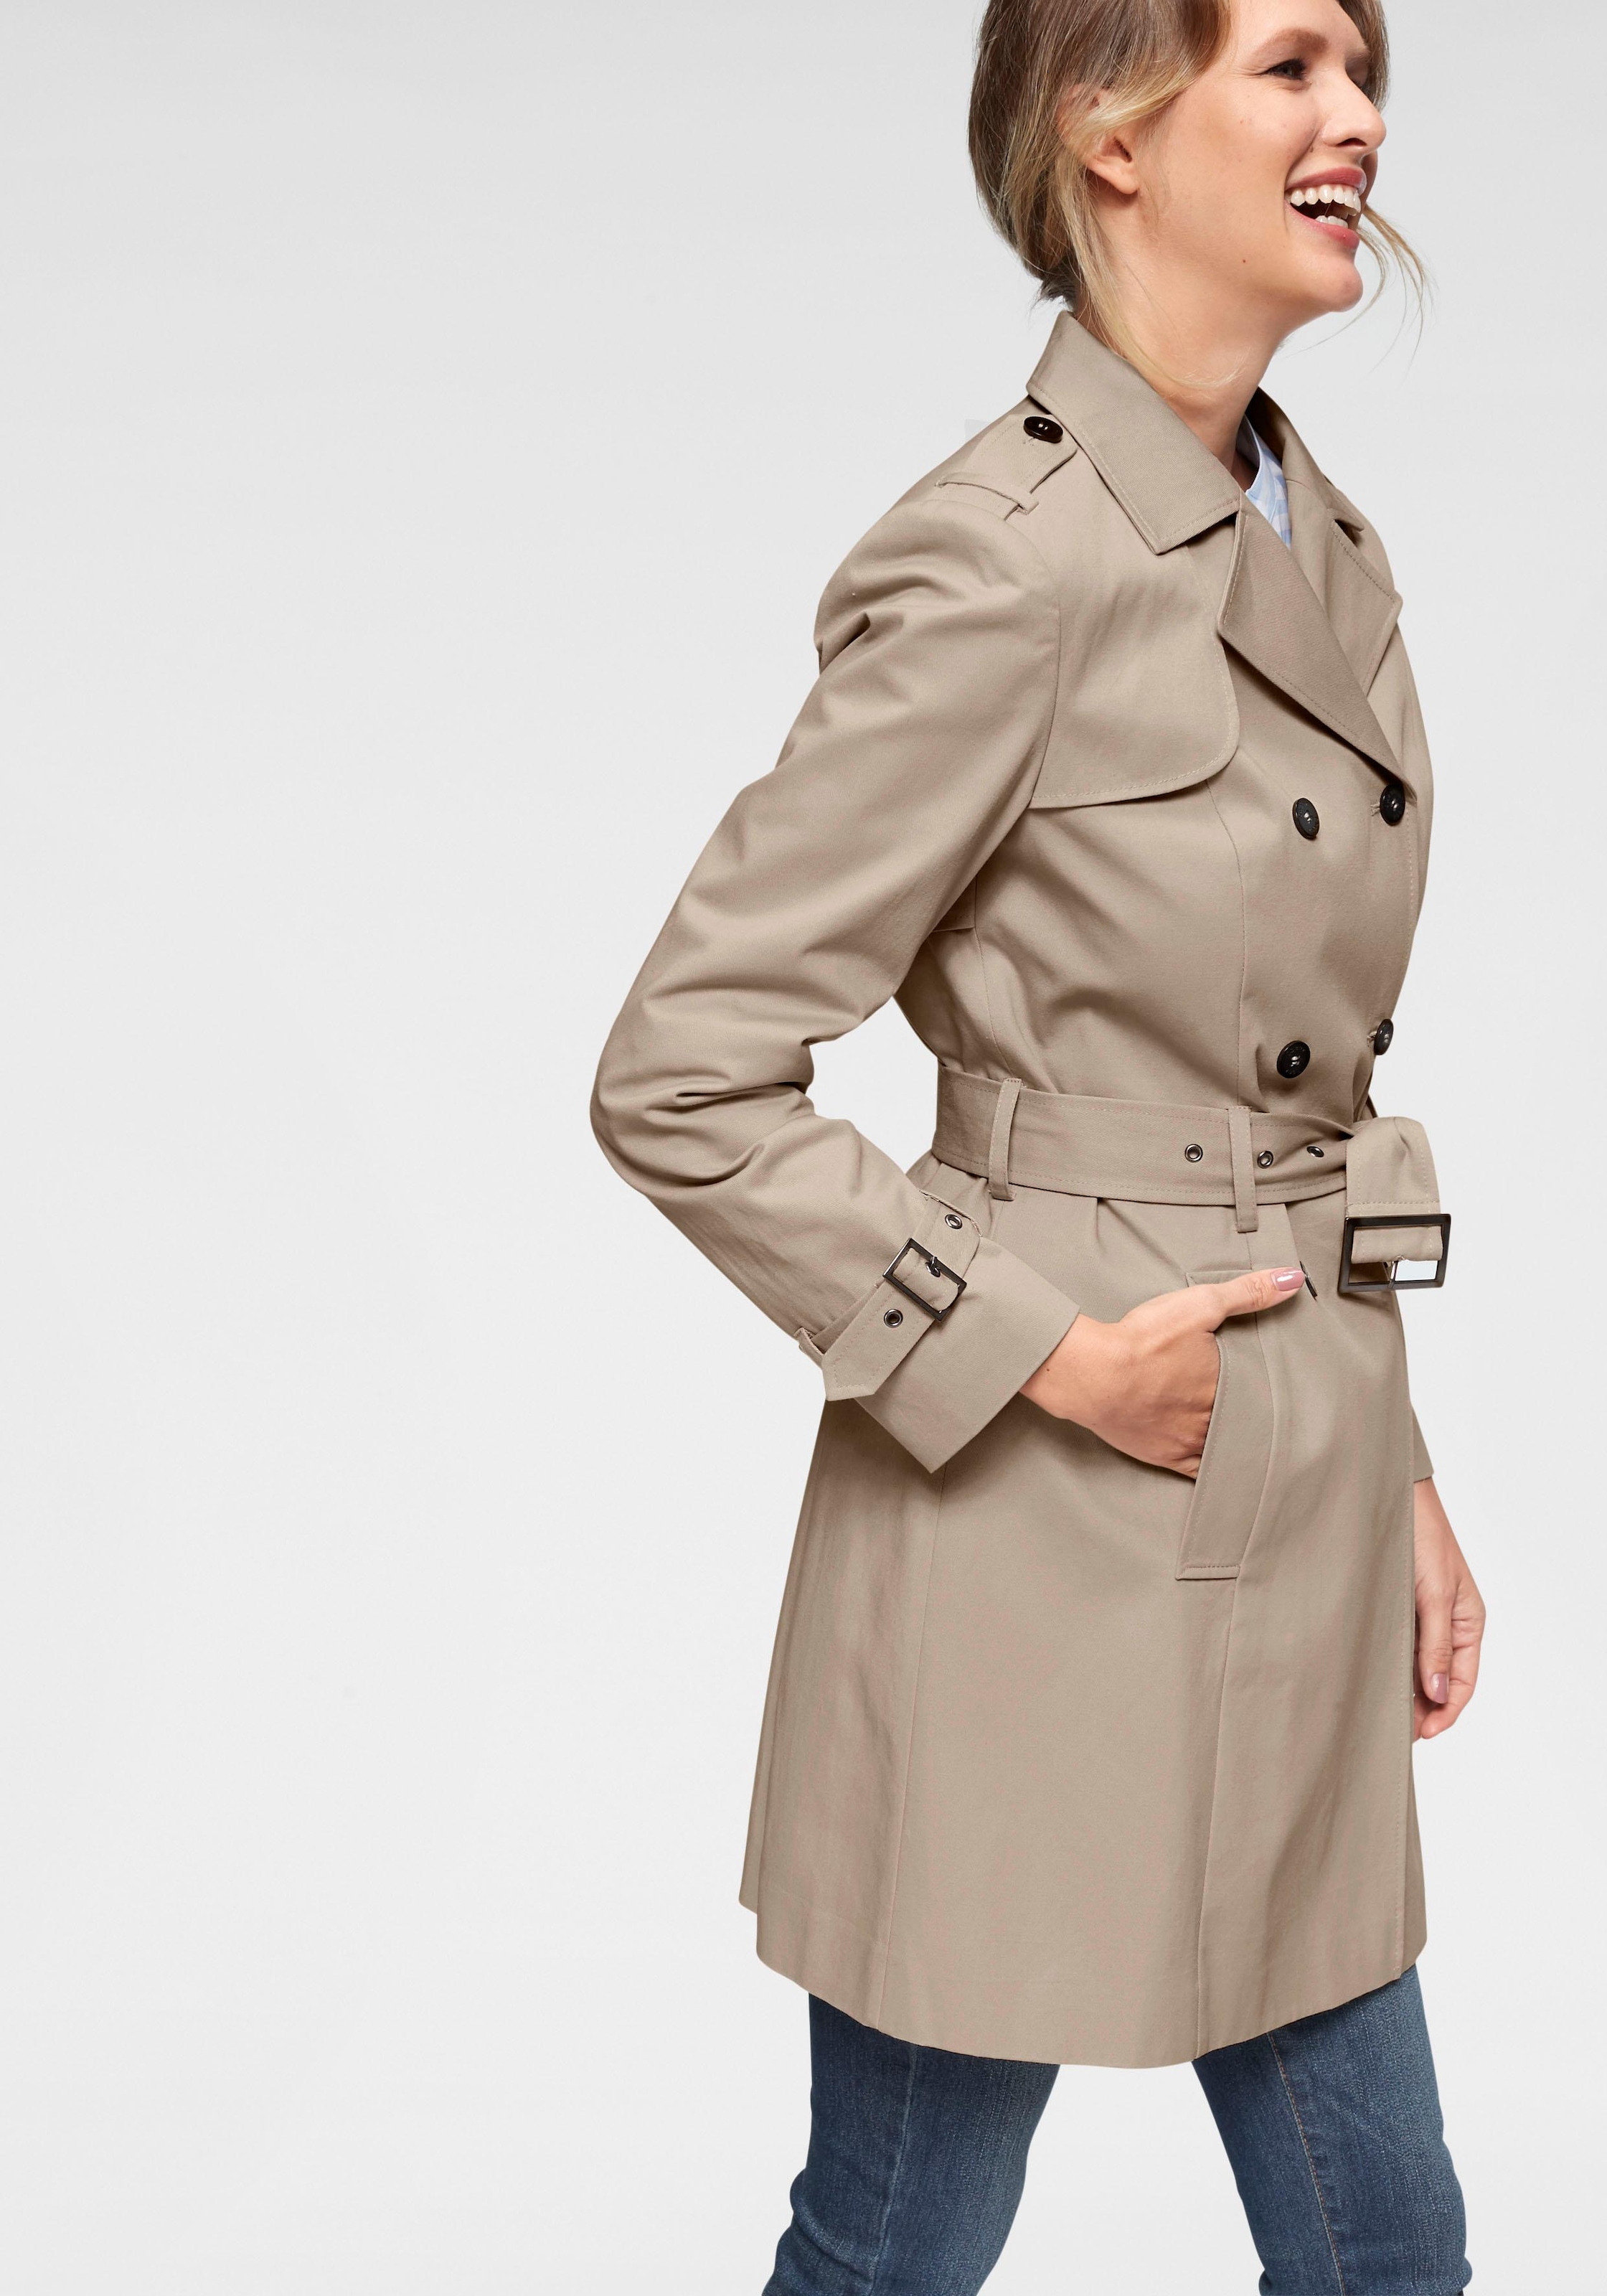 Mantel für Damen online kaufen | Stilvolle Damenmäntel bei Quelle